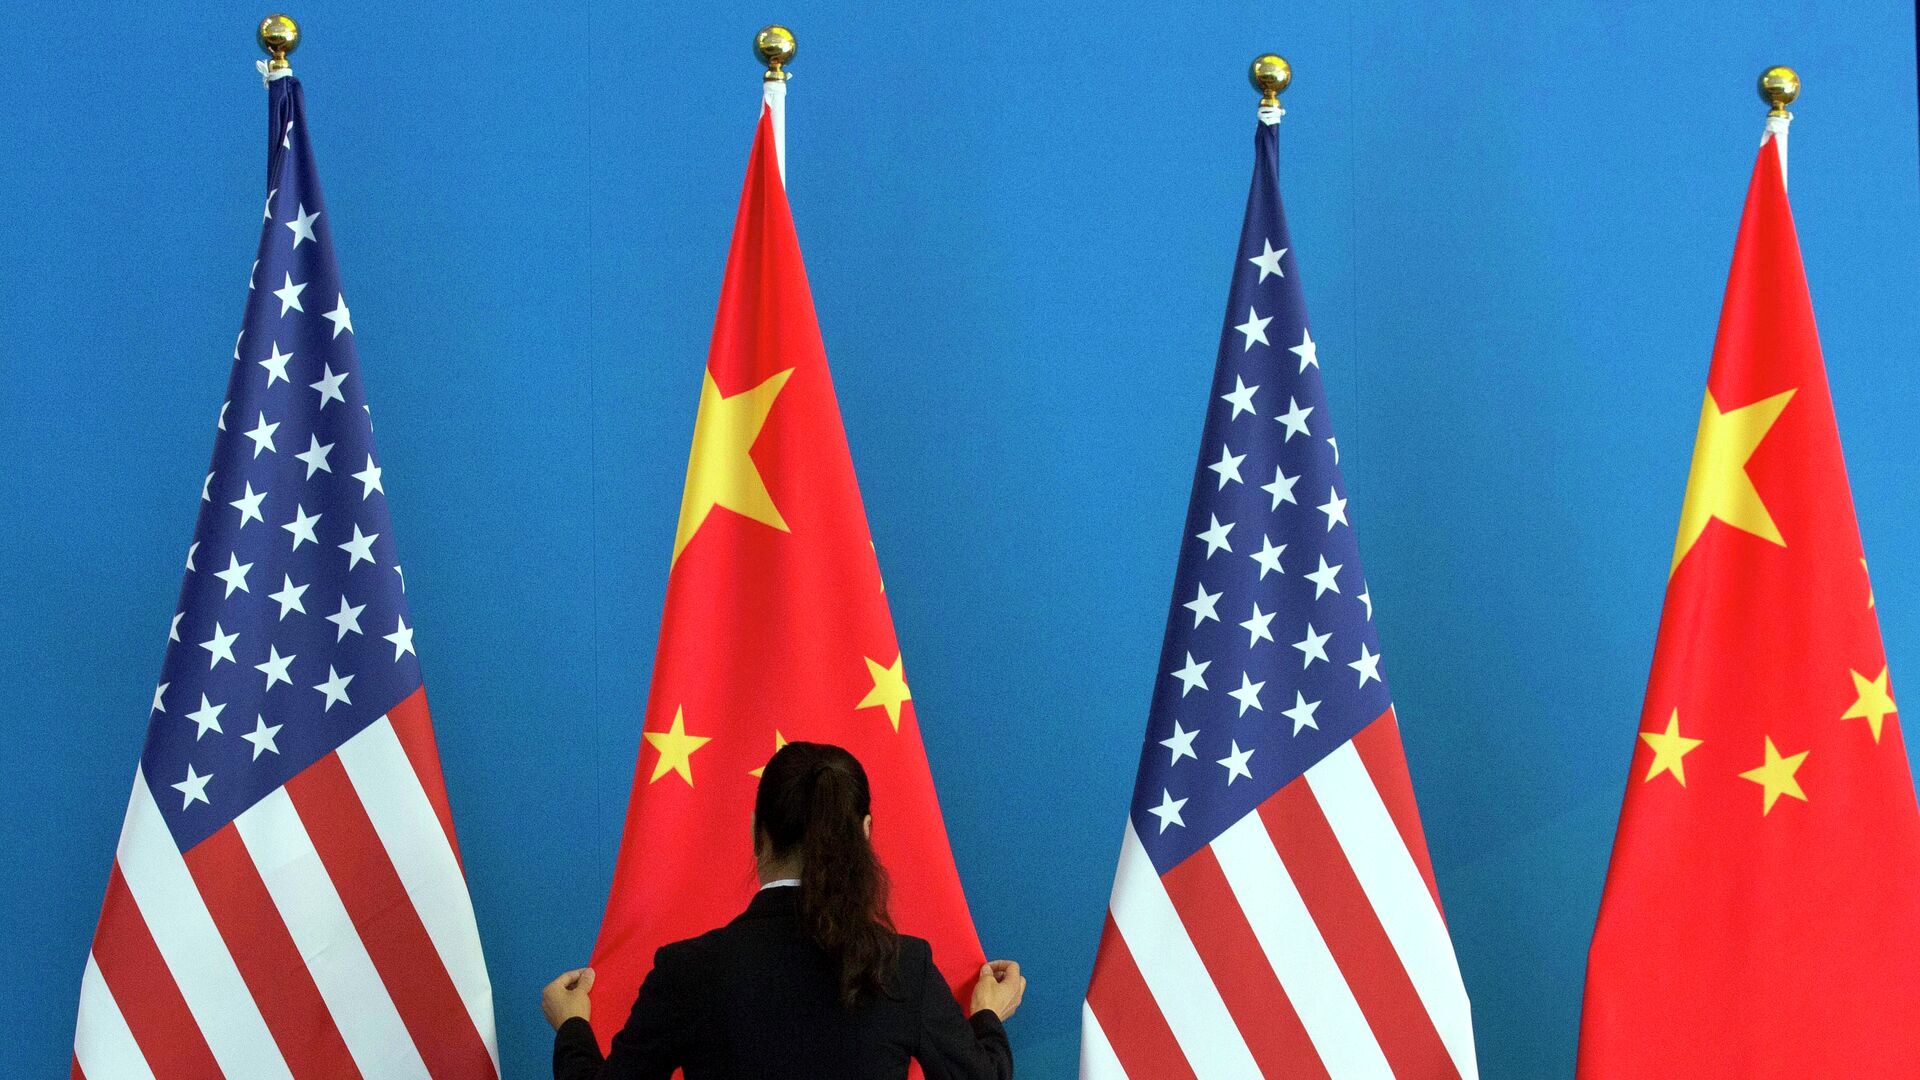 بیانیه تند چین علیه آمریکا